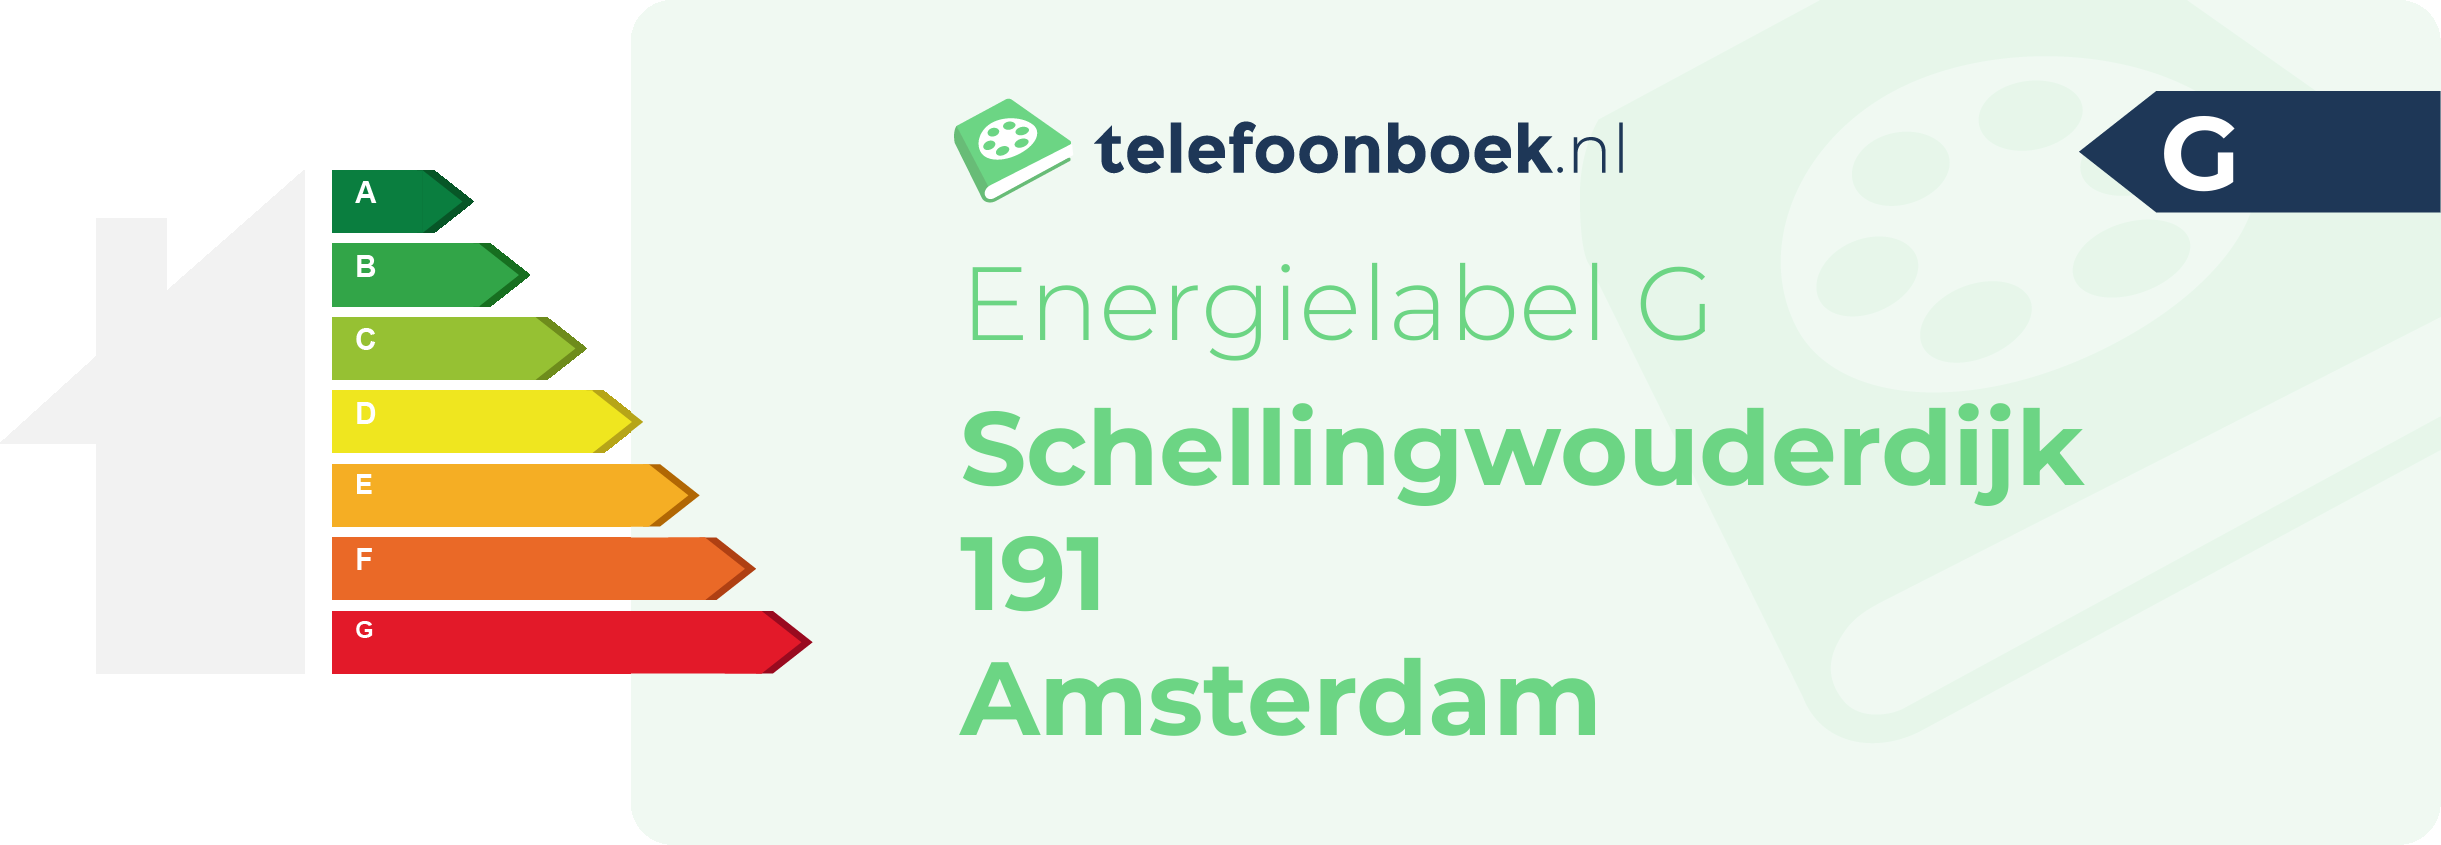 Energielabel Schellingwouderdijk 191 Amsterdam